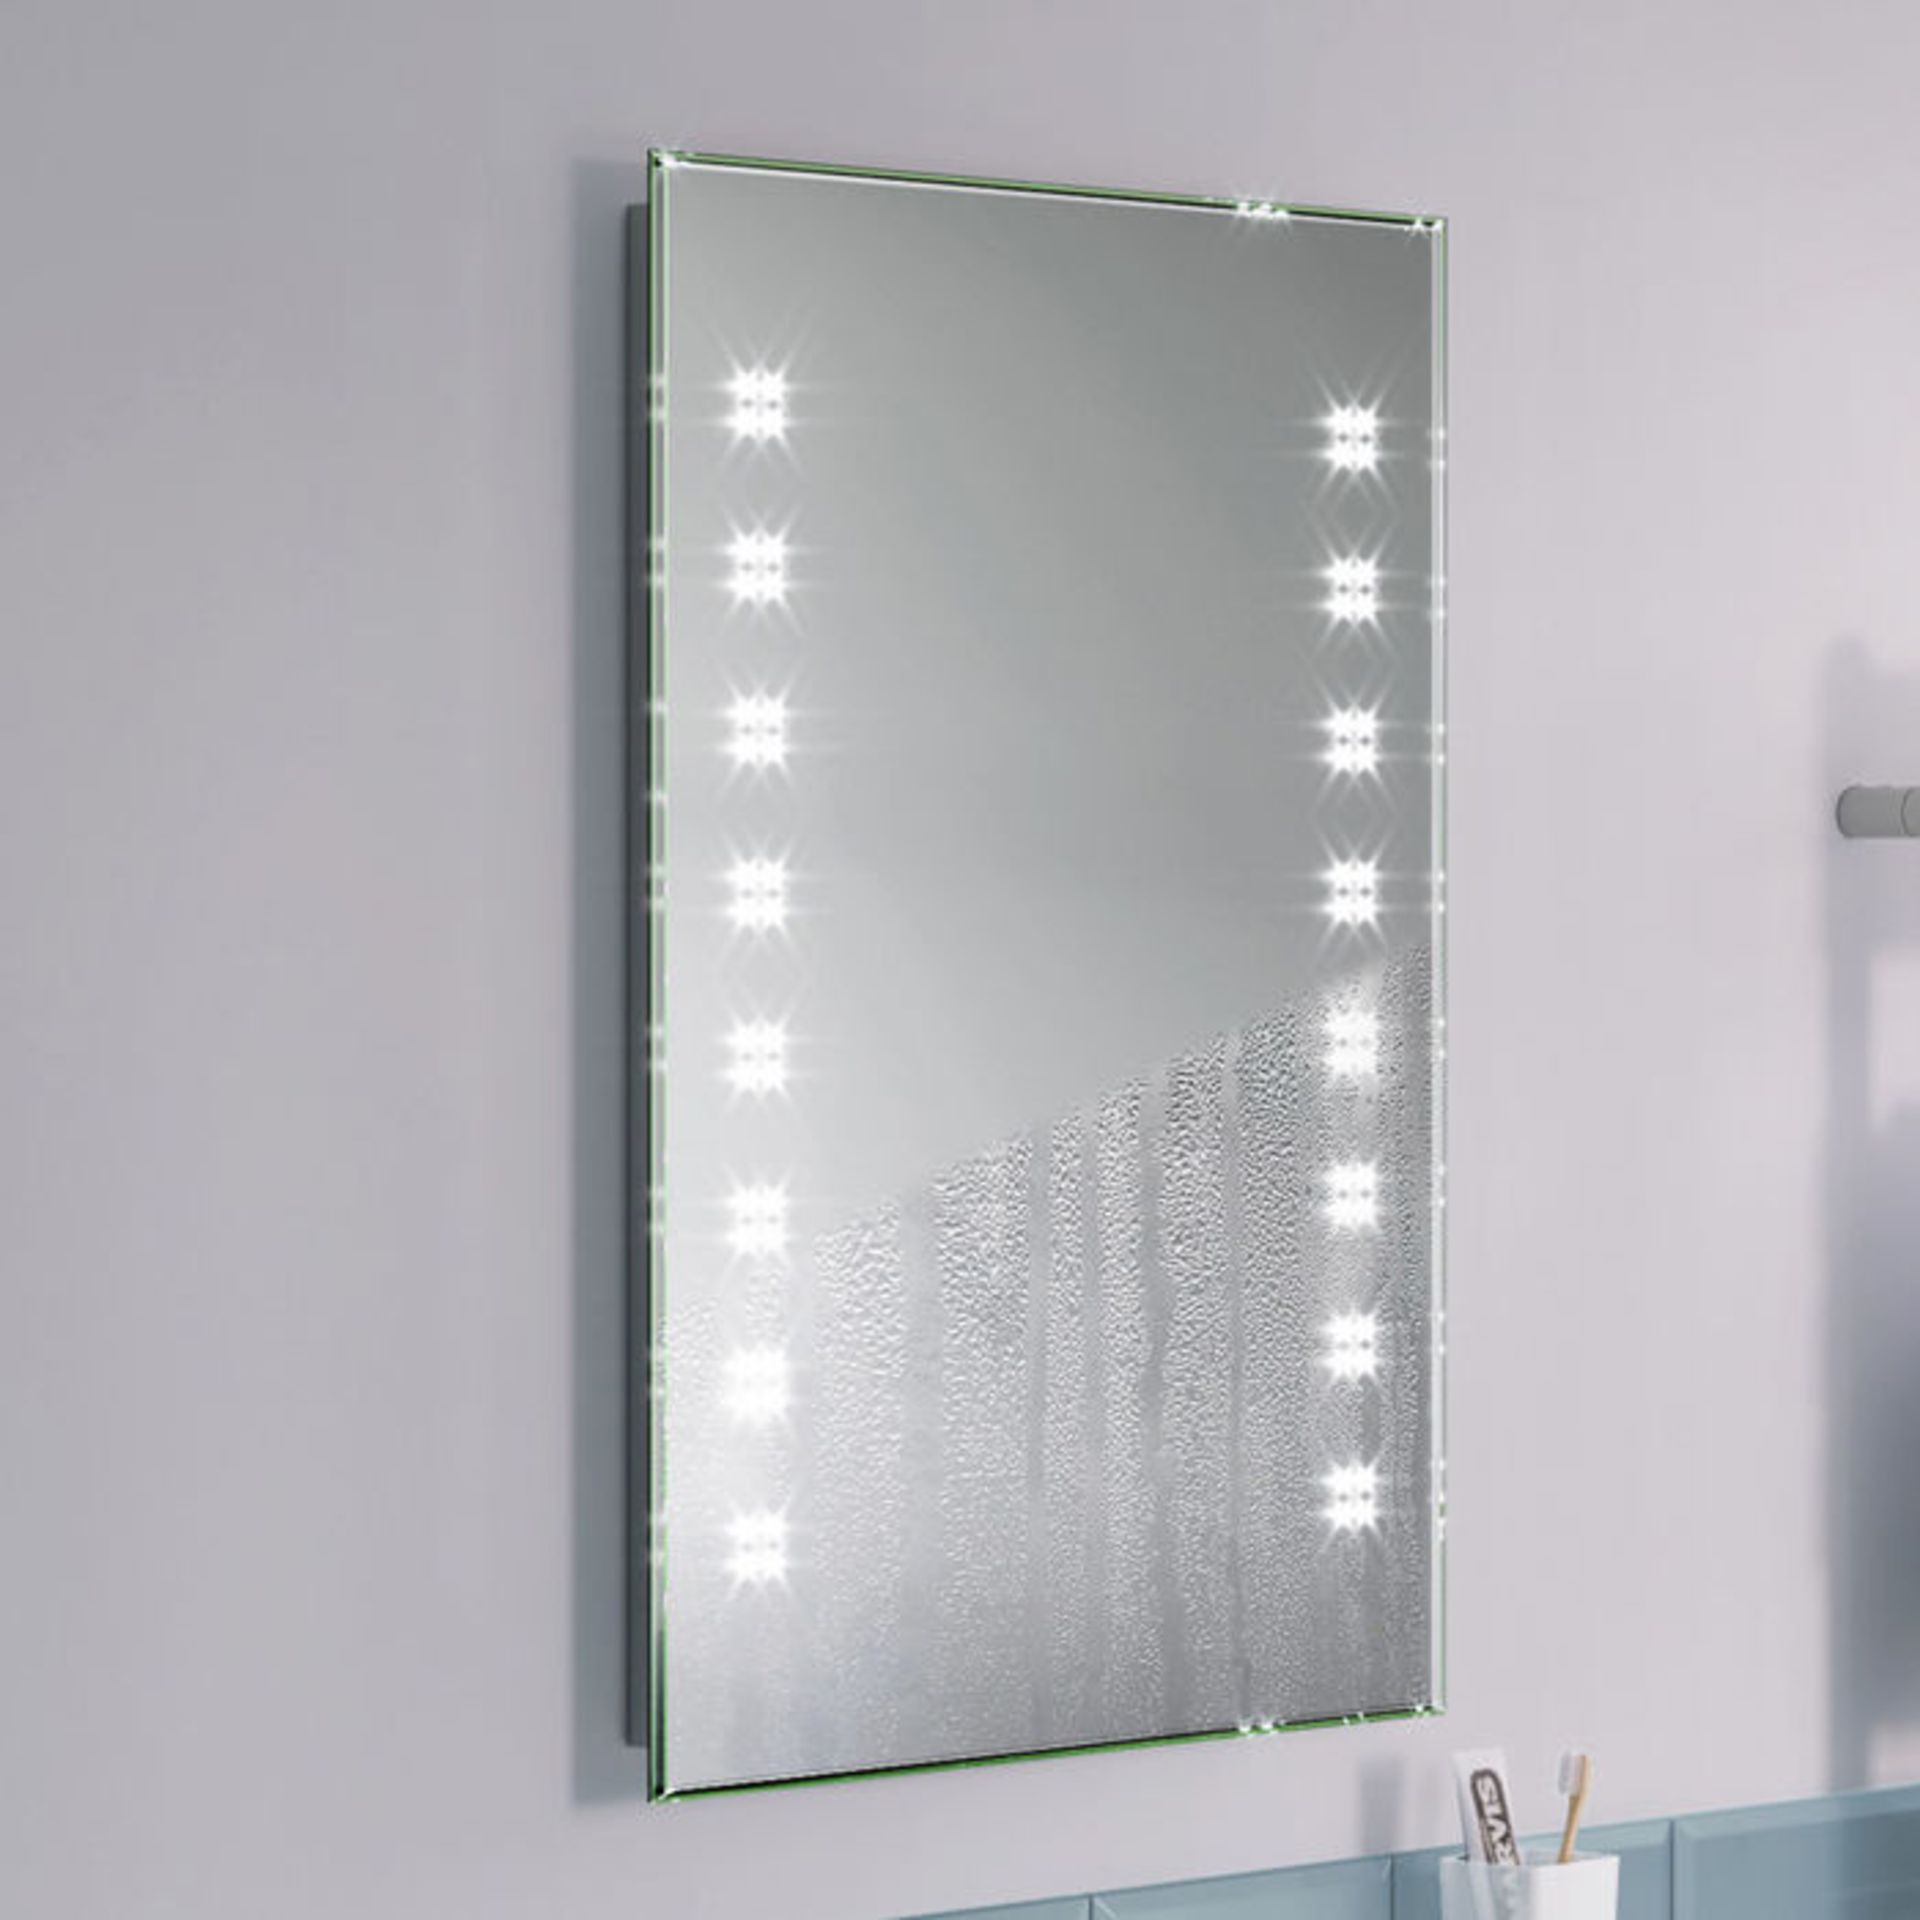 (H197) 700x500mm Galactic Designer Illuminated LED Mirror. RRP £324.99. Energy efficient LED - Image 3 of 6